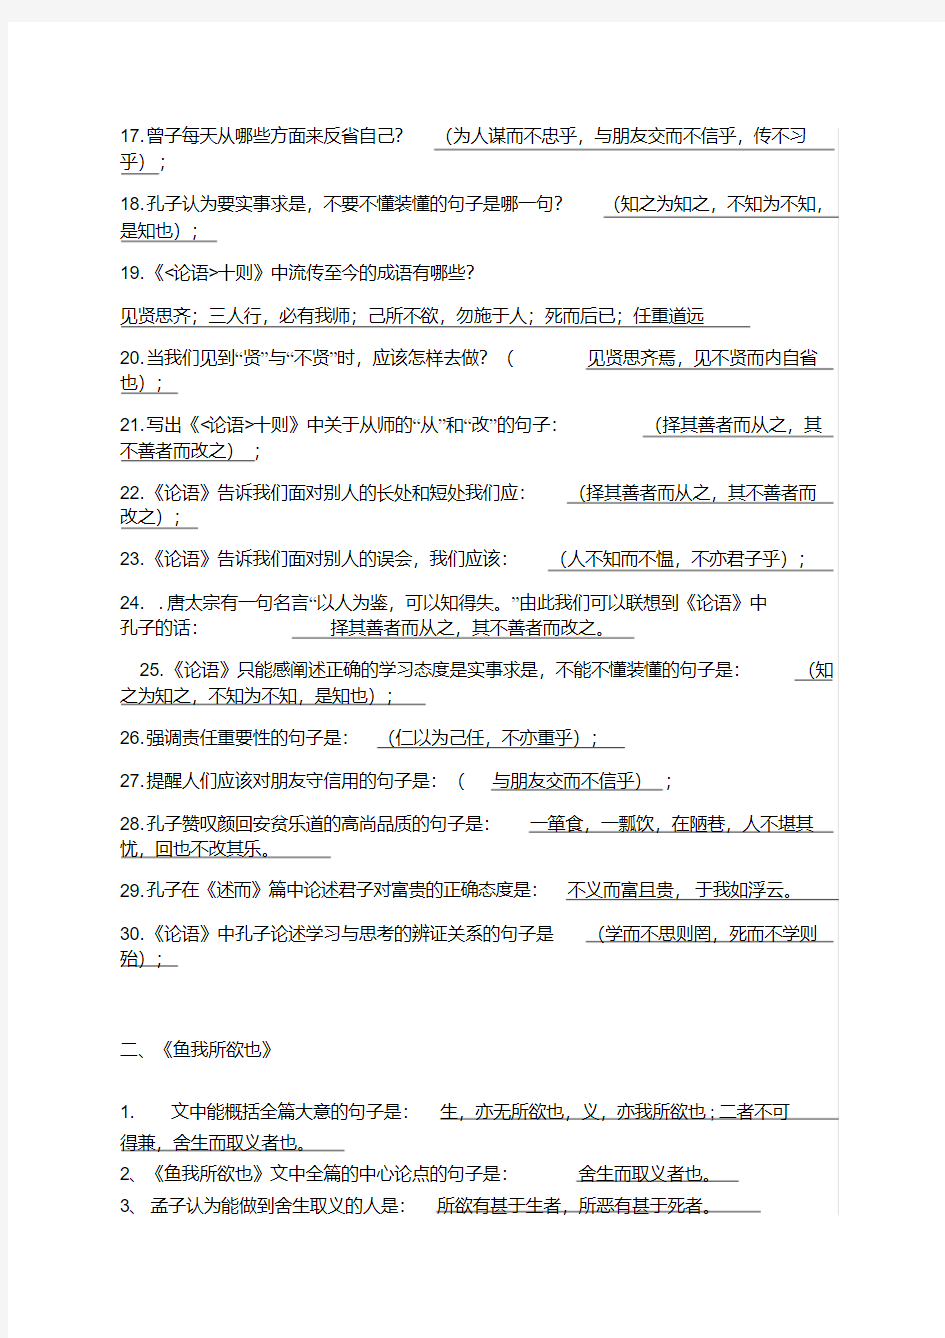 人教版初中语文古诗文默写复习资料全套2020年-2021年最新